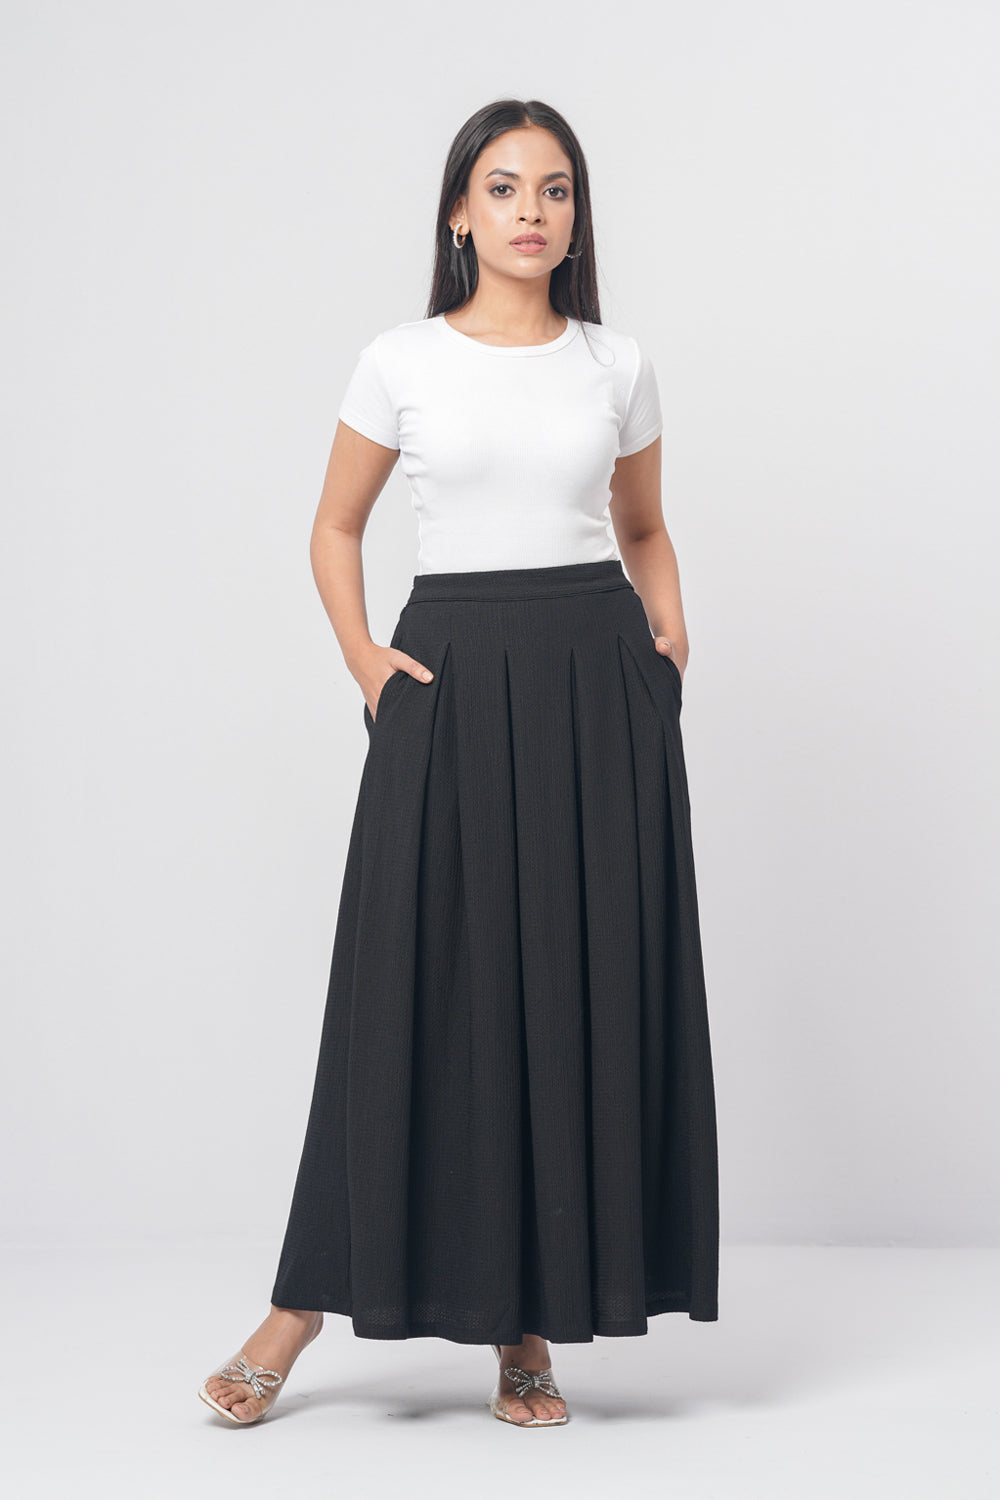 Women's Ethnic Skirt